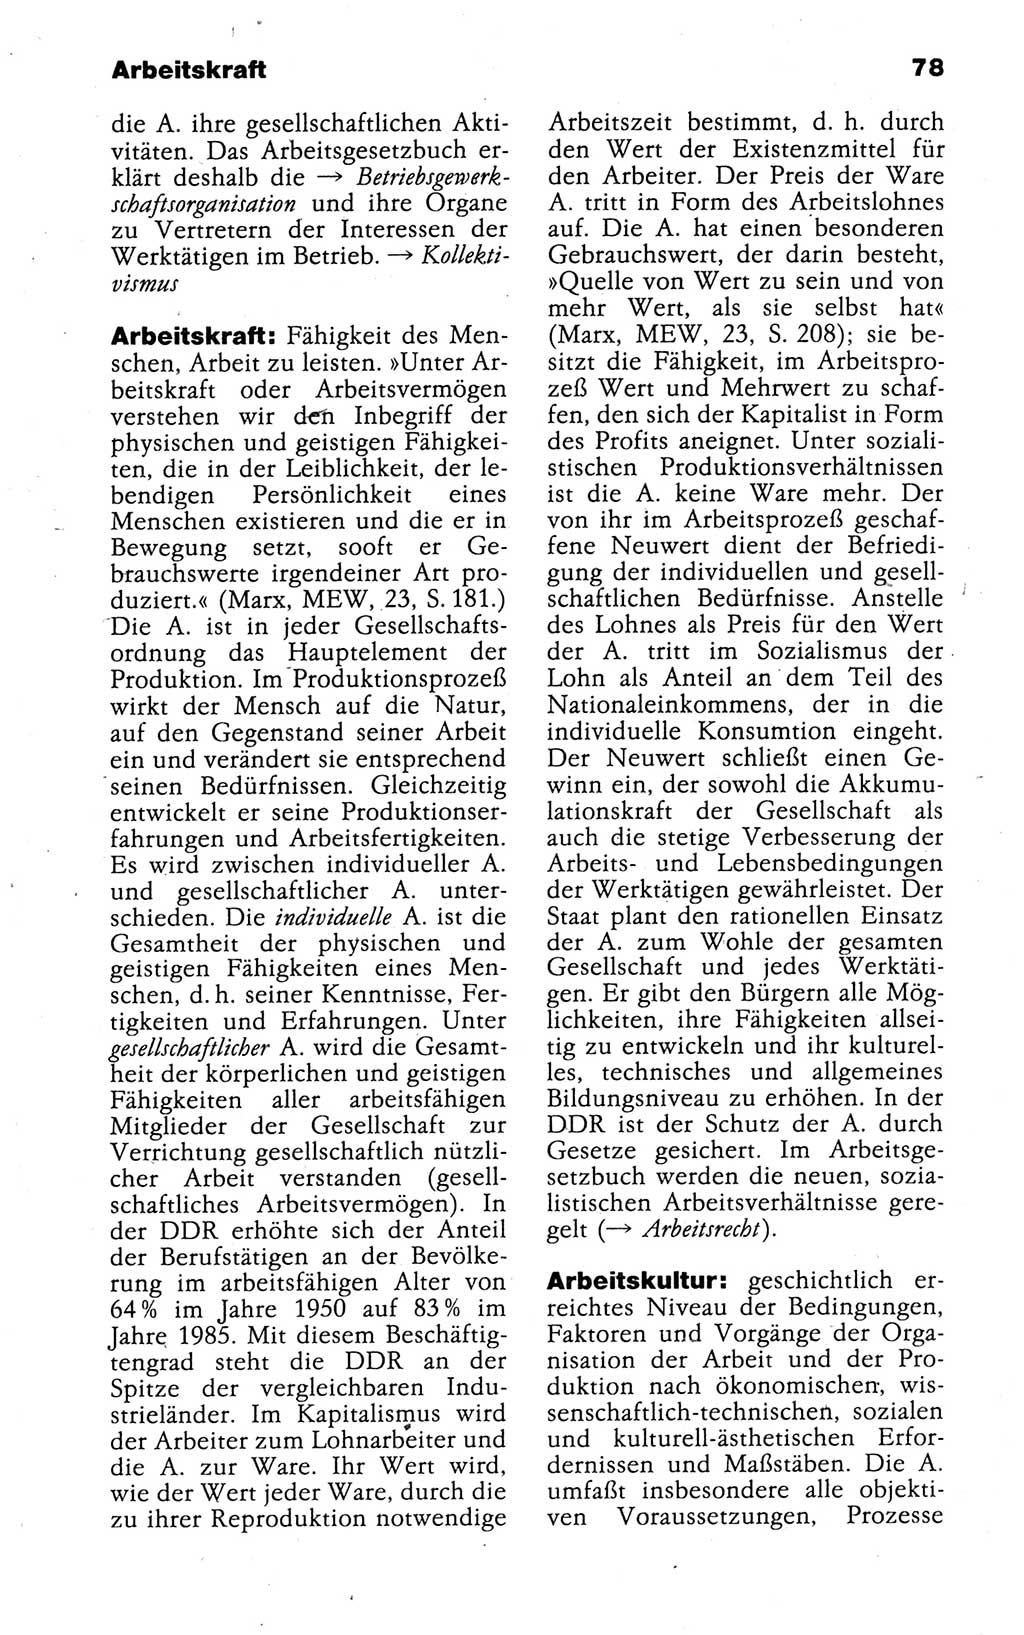 Kleines politisches Wörterbuch [Deutsche Demokratische Republik (DDR)] 1988, Seite 78 (Kl. pol. Wb. DDR 1988, S. 78)